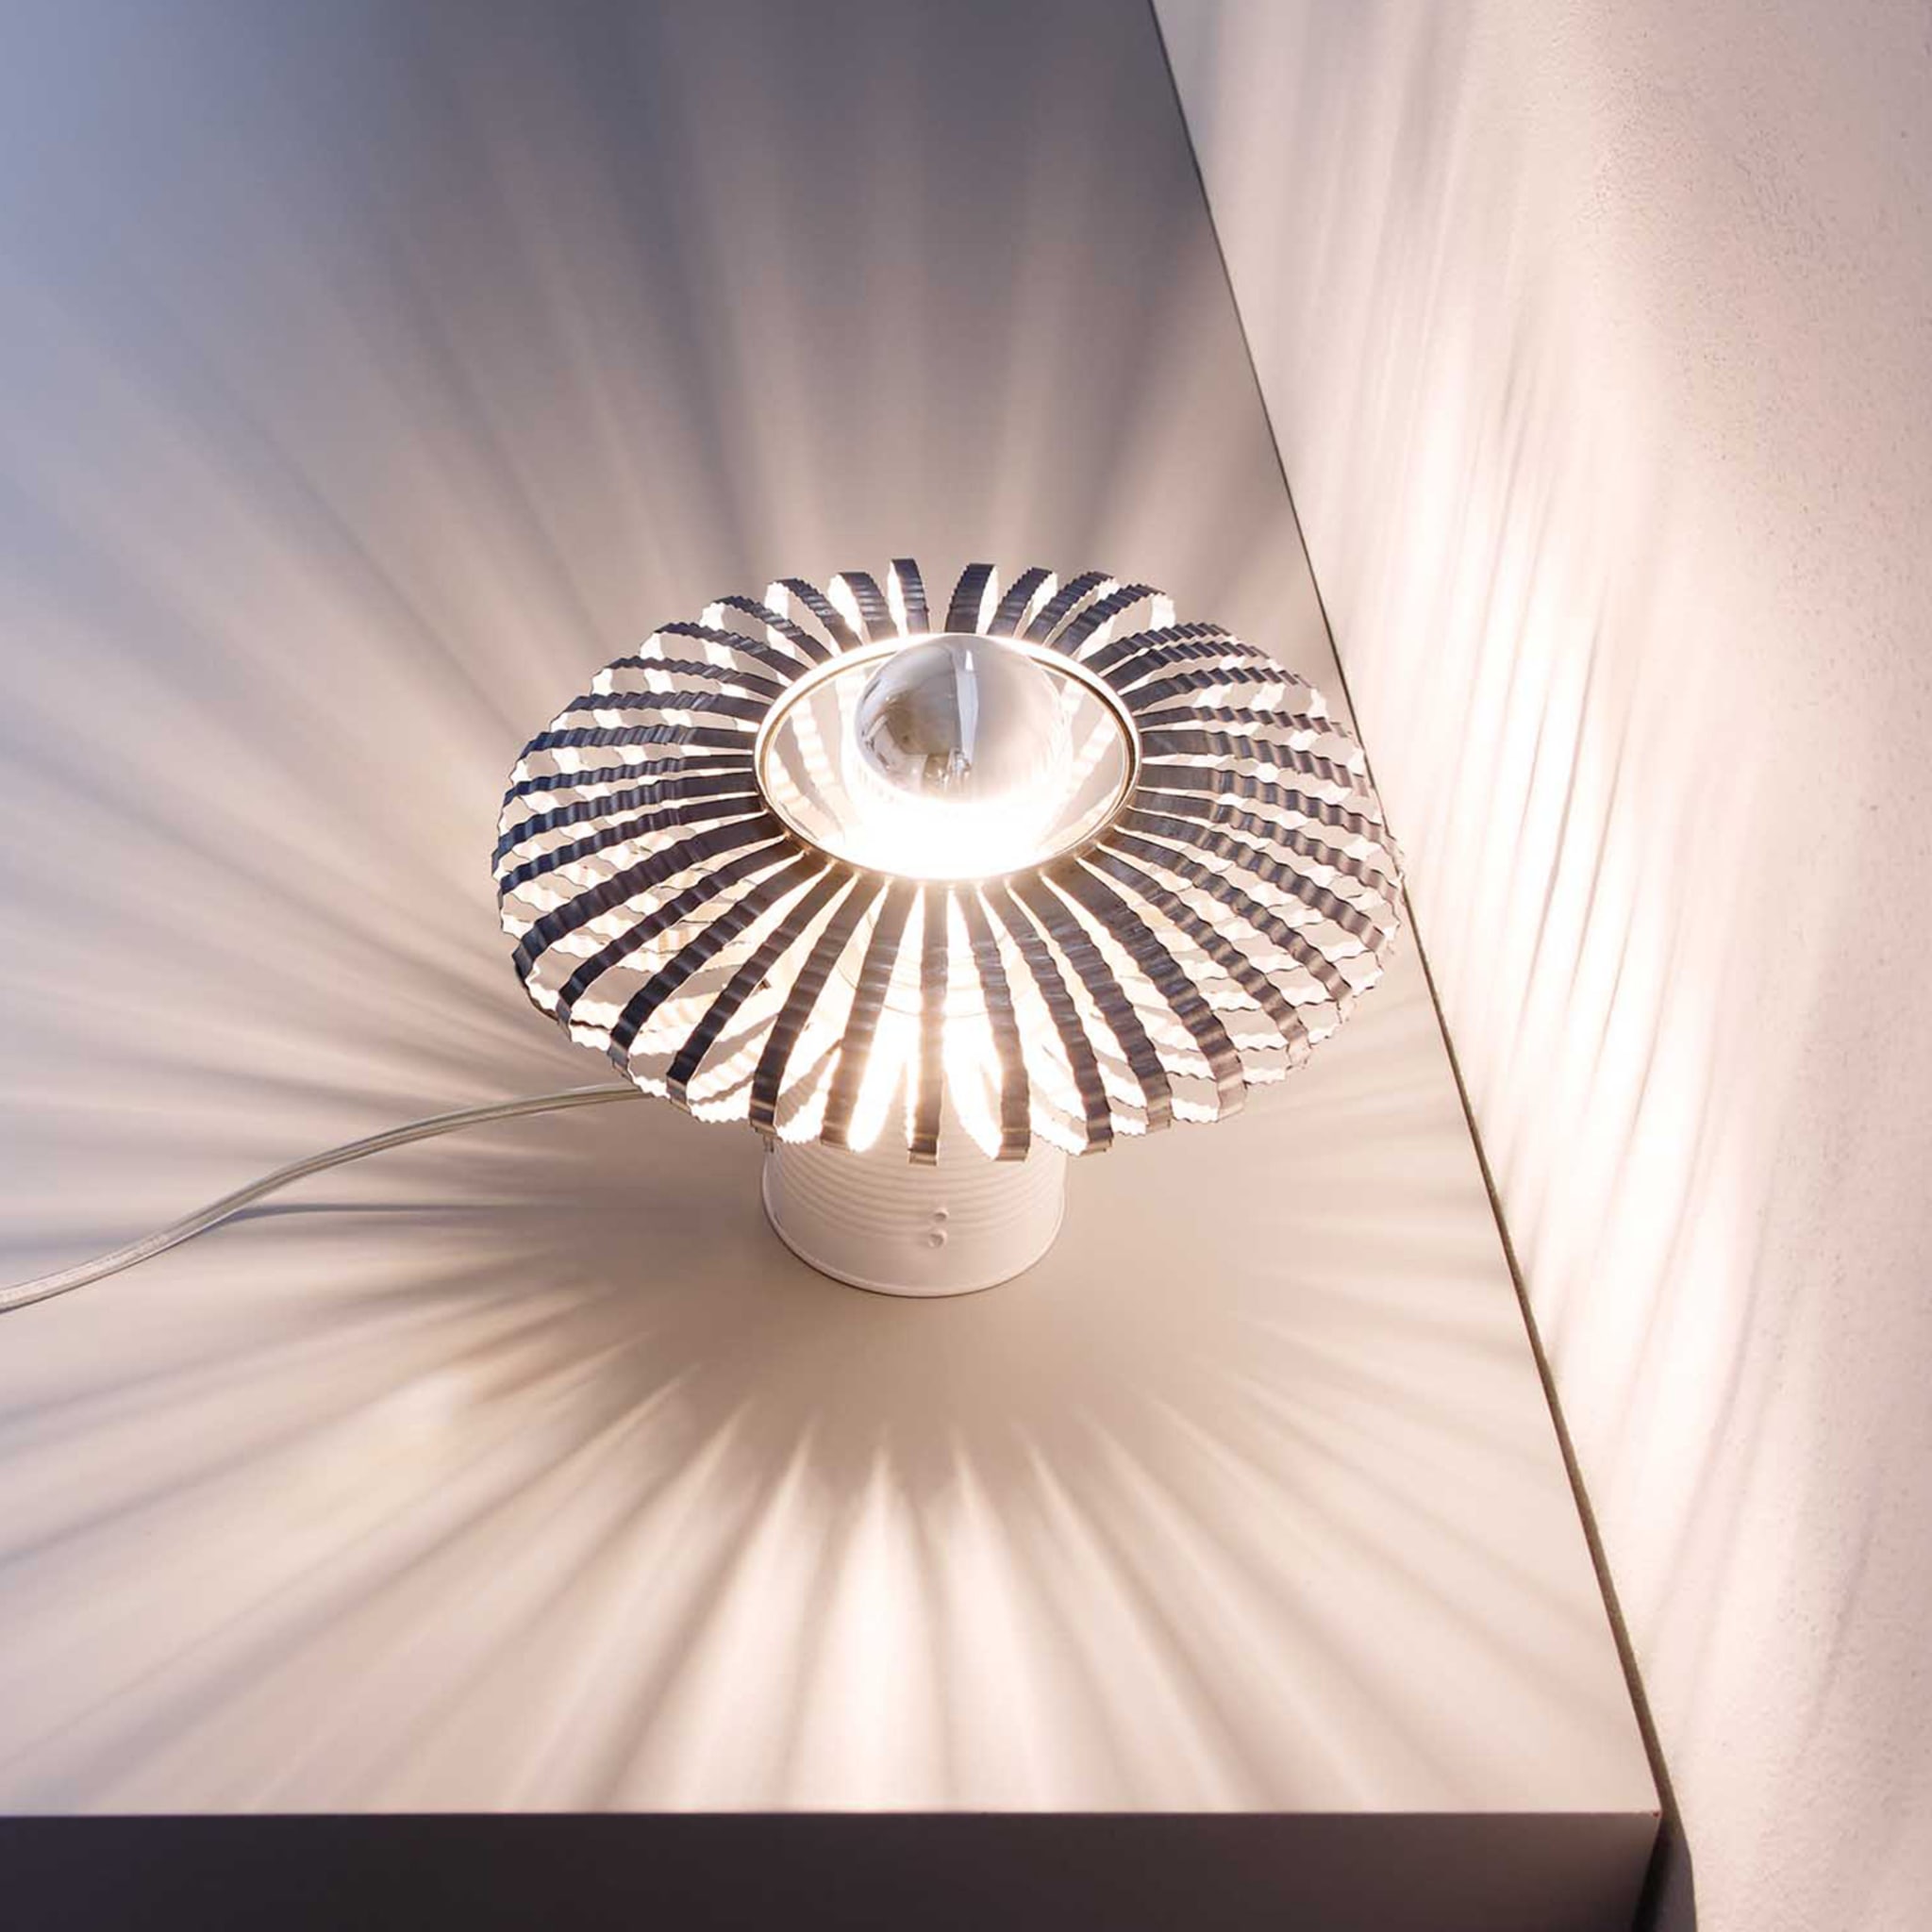 Celeste Table Lamp by Nadja Galli Zugaro - Alternative view 3